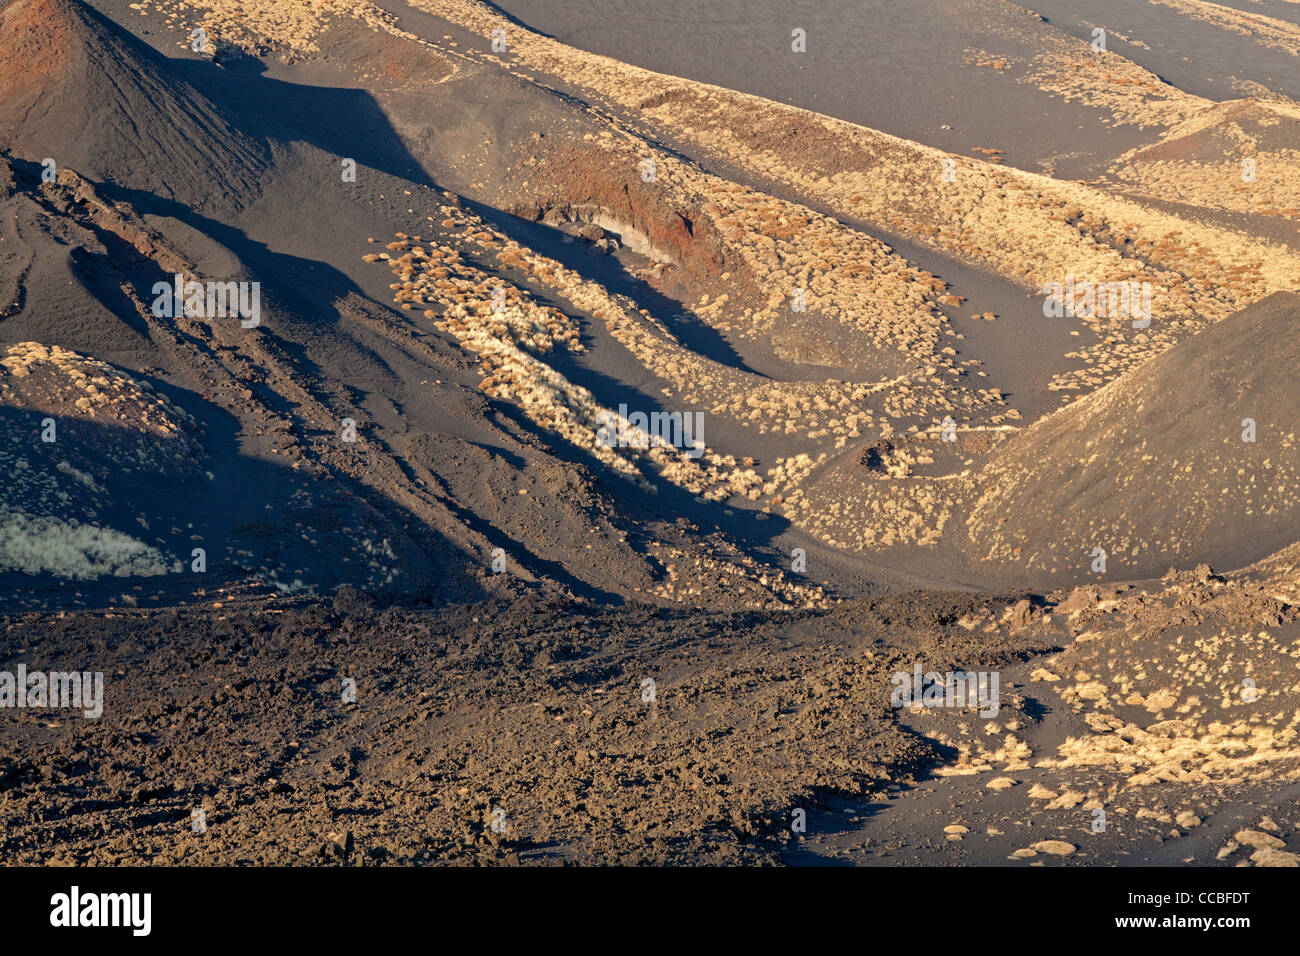 Stream of lava near the Mount Etna, Sicily, Italy Stock Photo